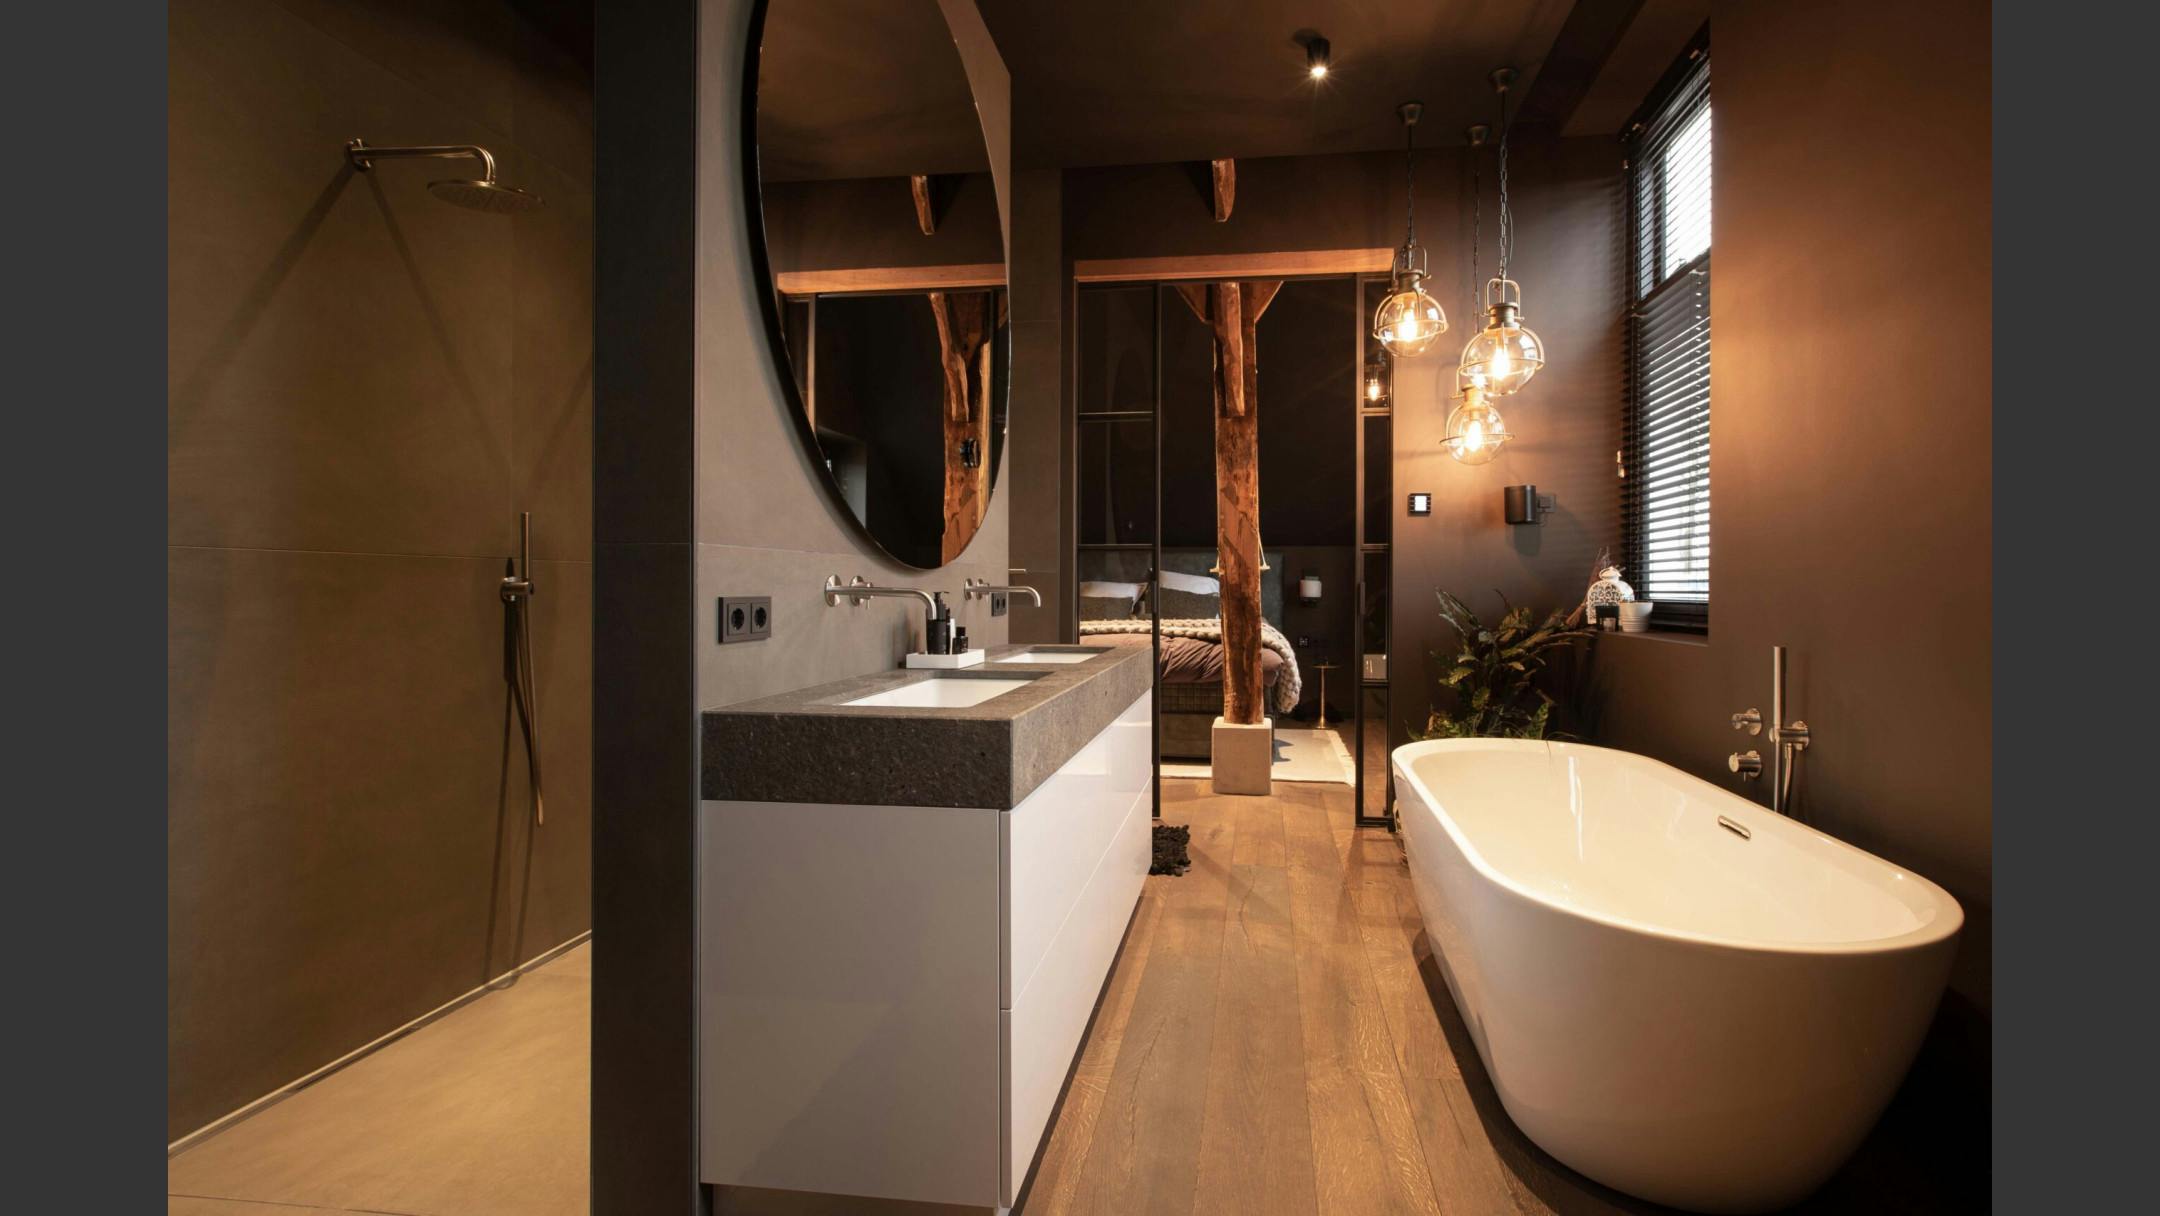 Op maat gemaakte luxe badkamer met vrijstaand bad, inloopdouche en houttinten.